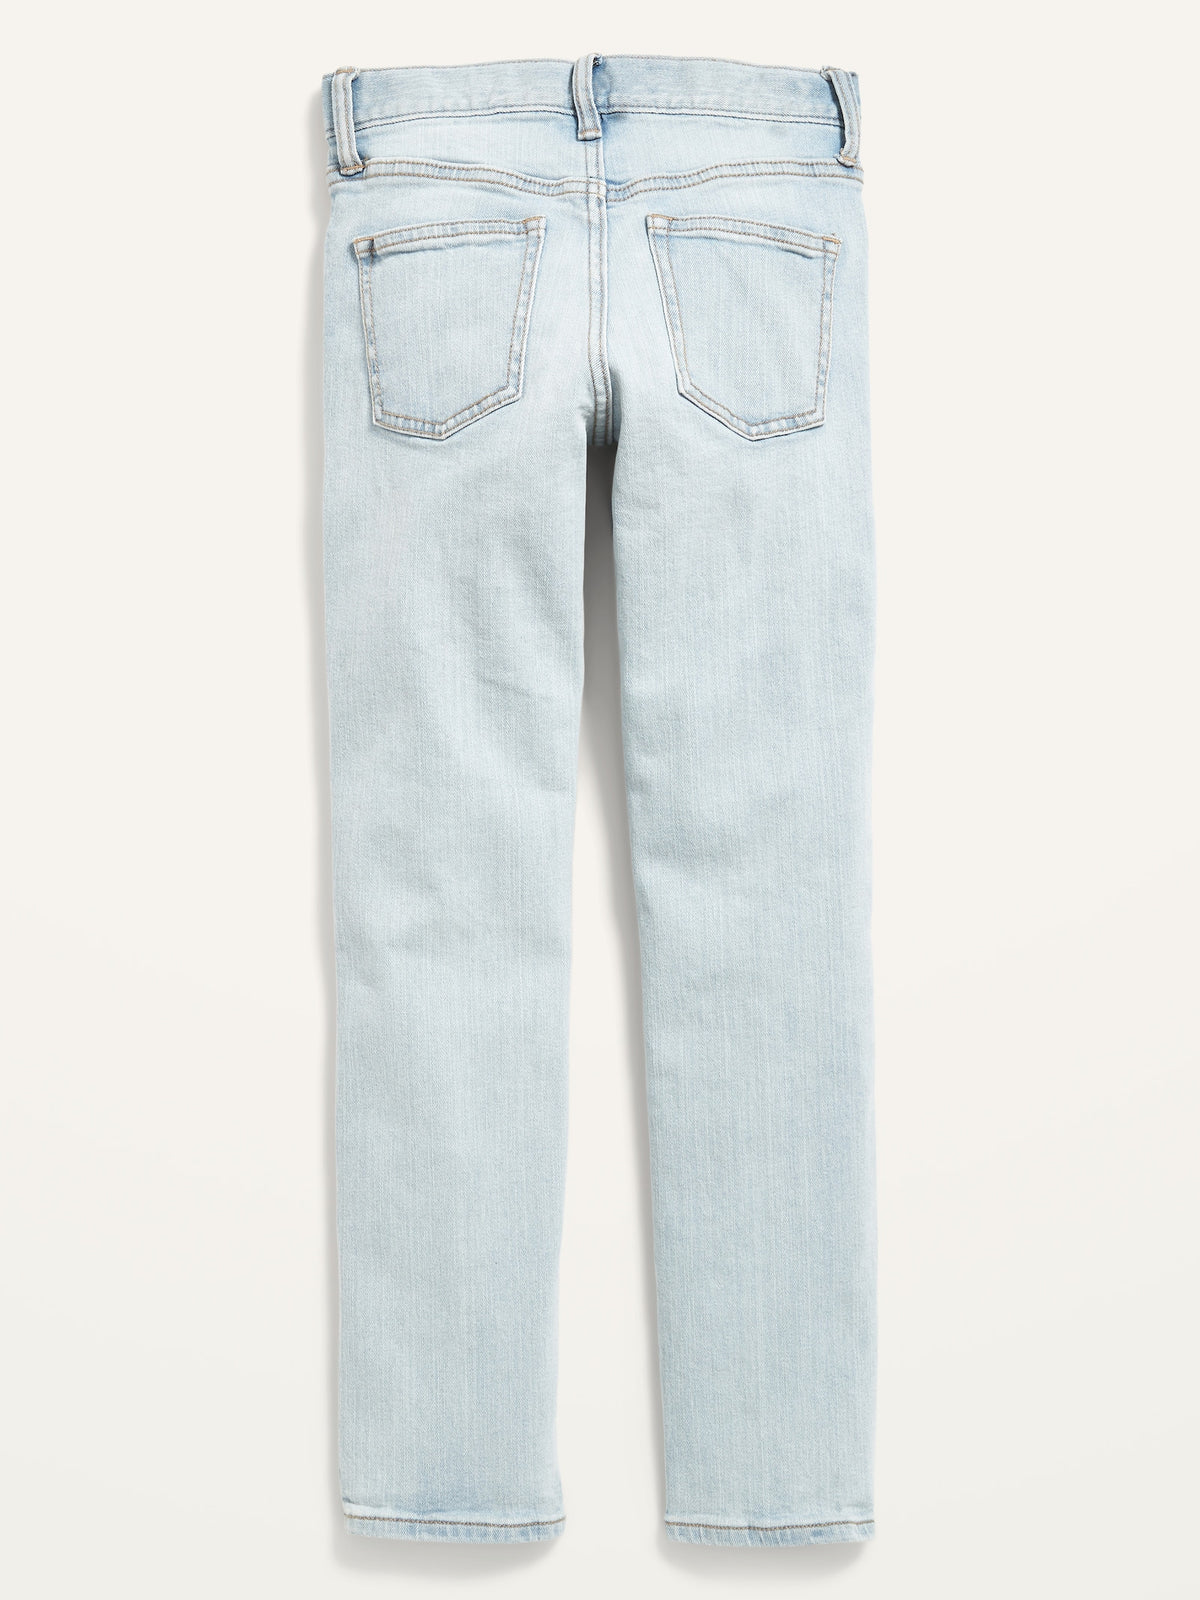 Built-In Flex Skinny Jeans for Boys